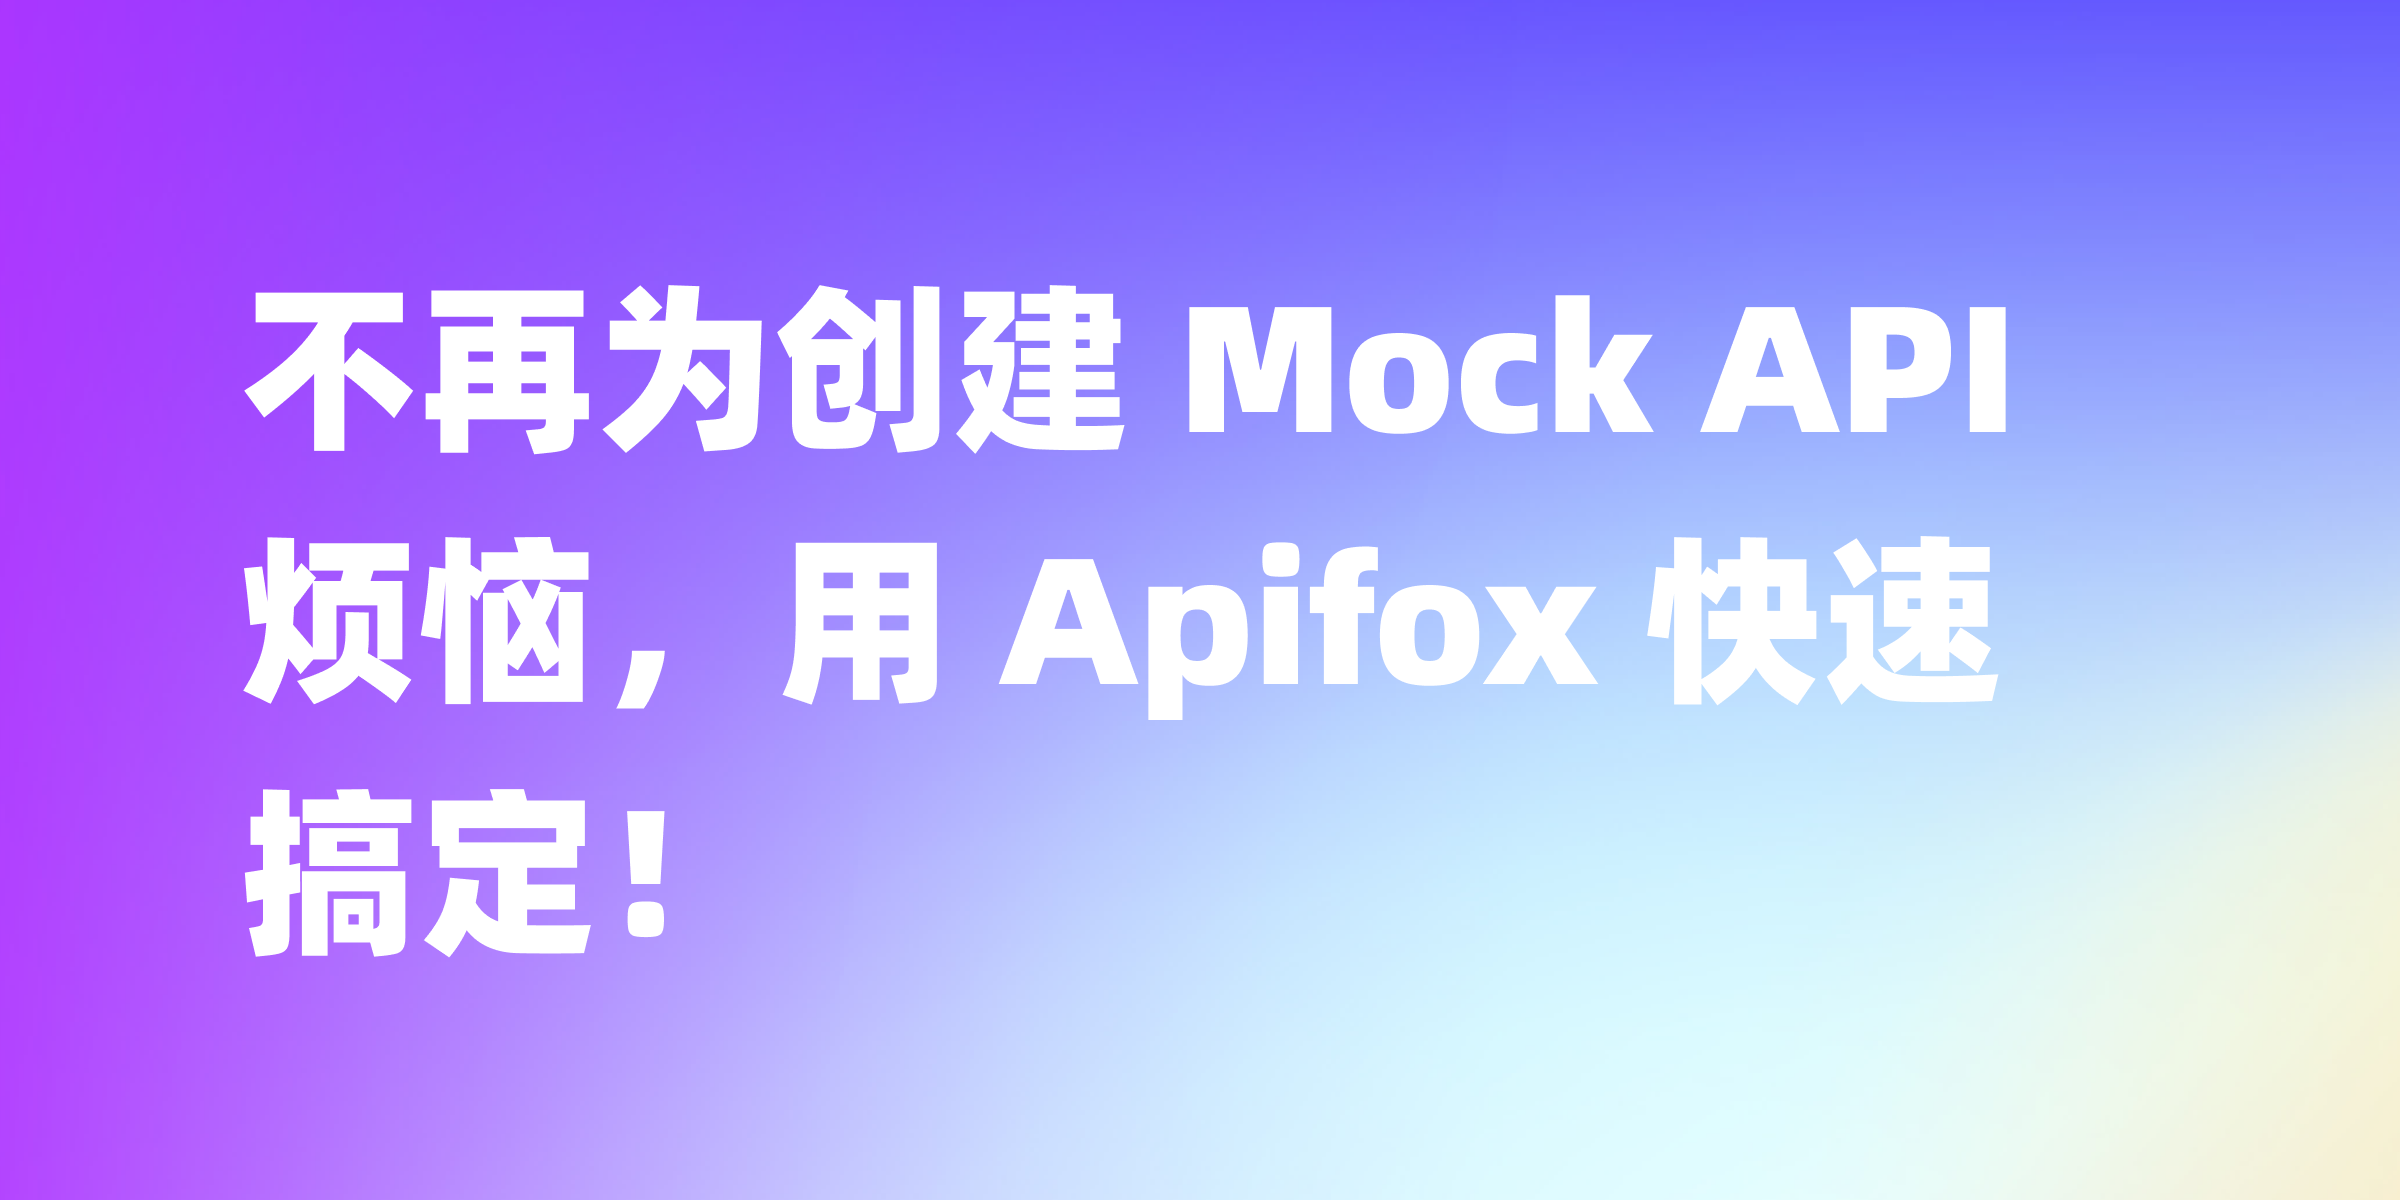 手把手教你用 Apifox 搞定 Mock API